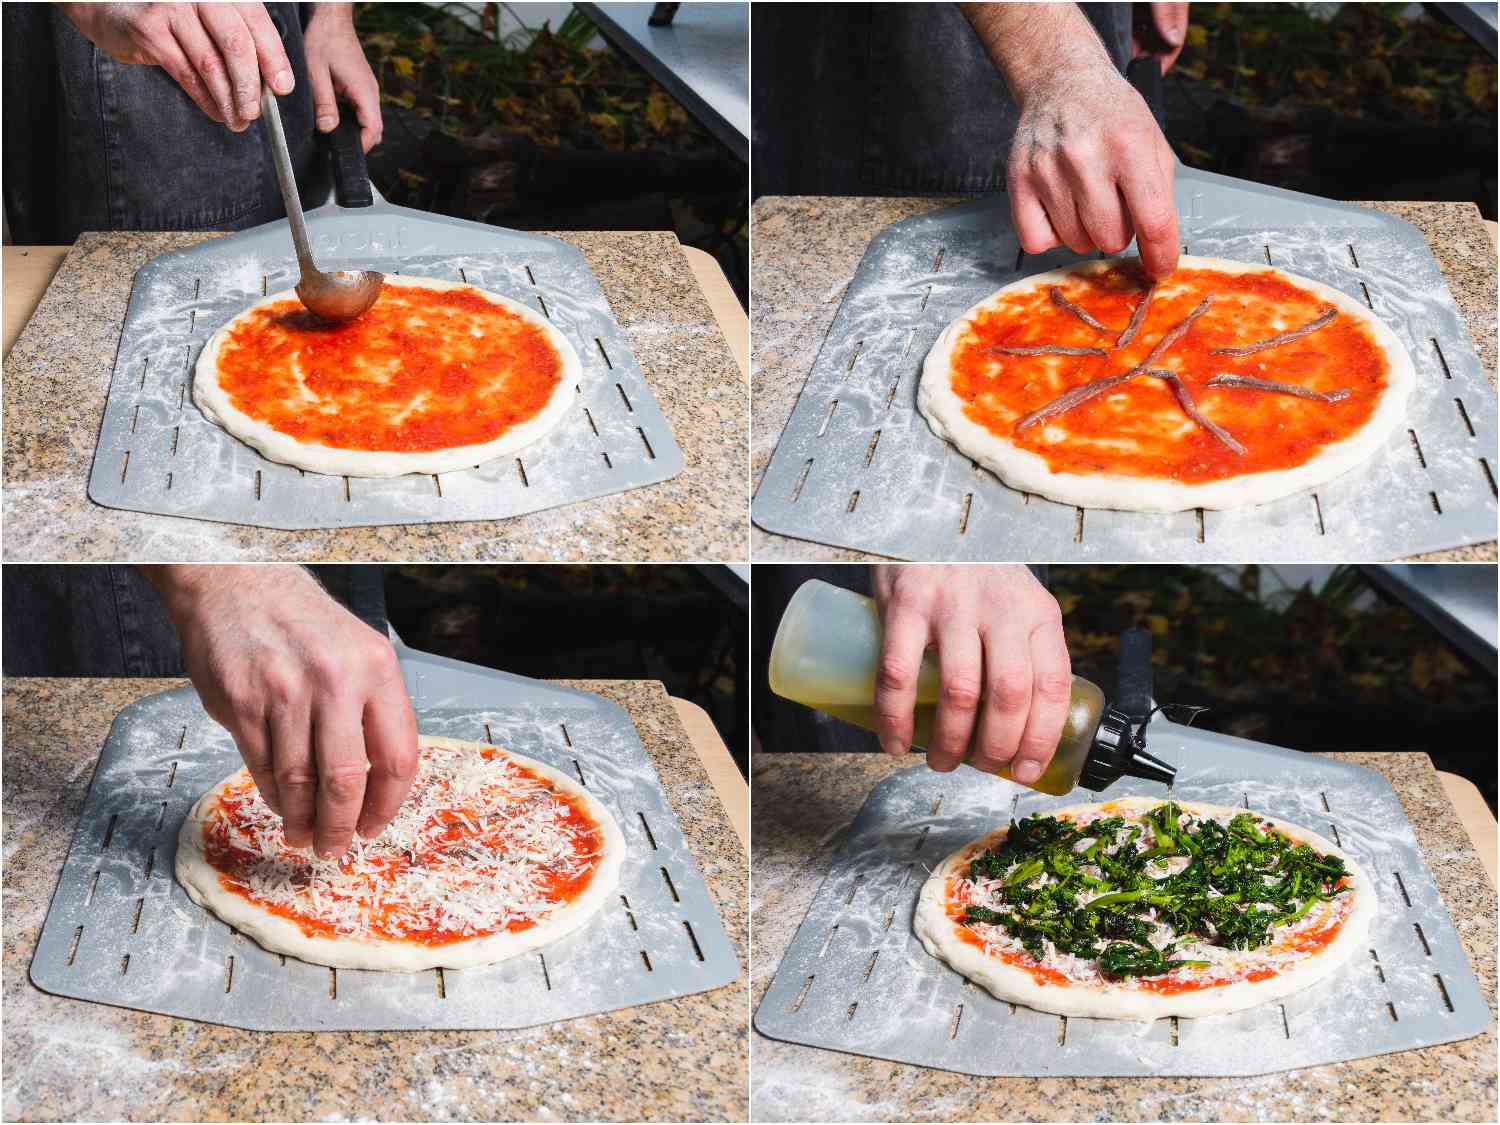 在拉伸的披萨面团上撒上番茄酱、凤尾鱼、磨碎的奶酪、烧焦的拉贝和橄榄油。